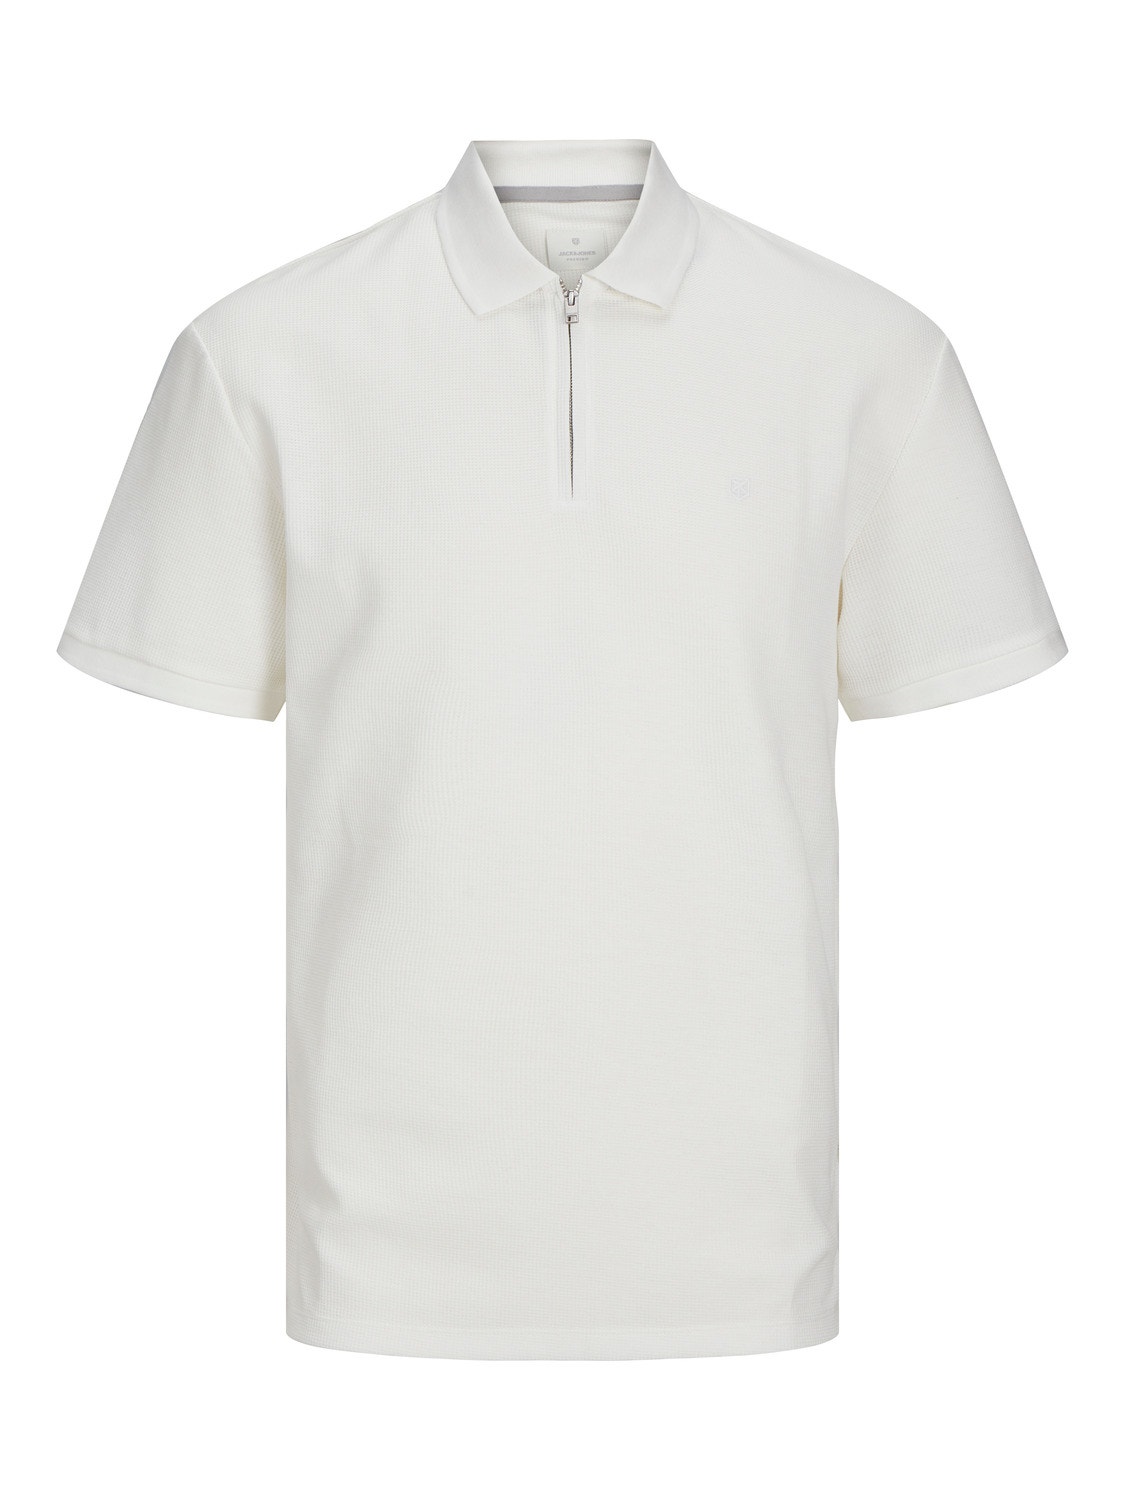 Jack & Jones Plain Polo T-shirt -Cloud Dancer - 12255578